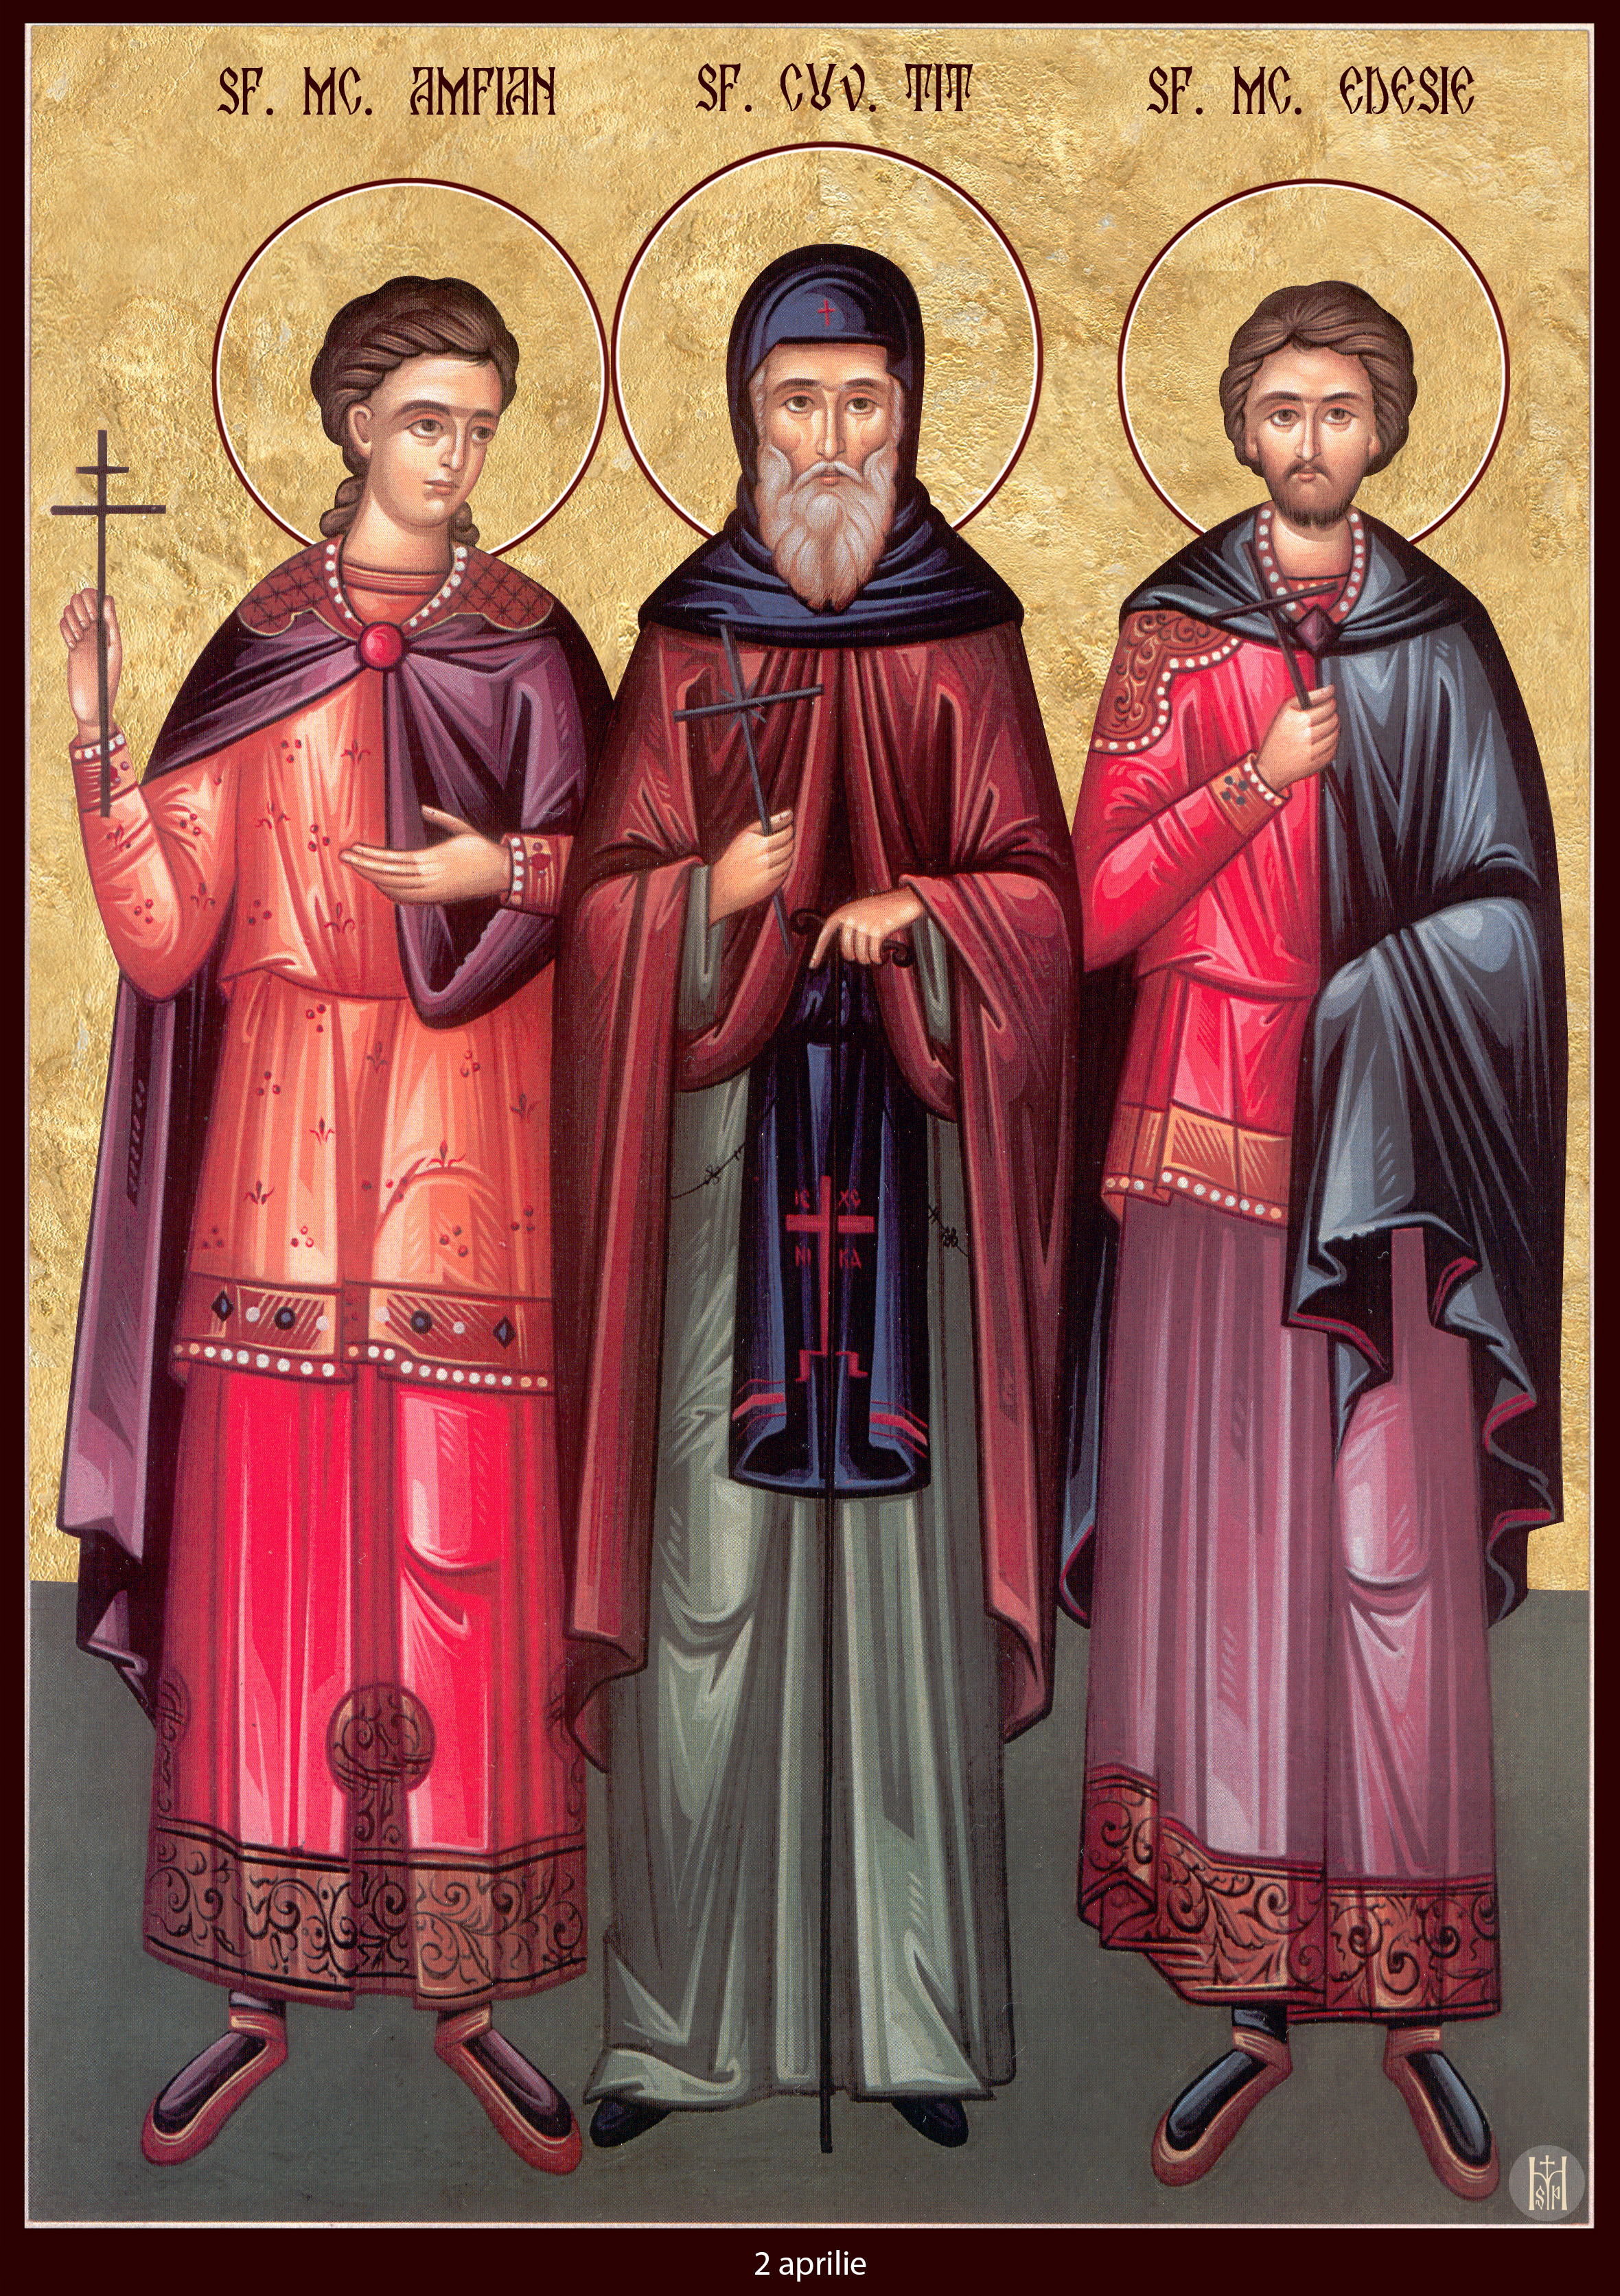 Sfântul Cuvios Tit, Sfinții Mucenici Amfian și Edesie